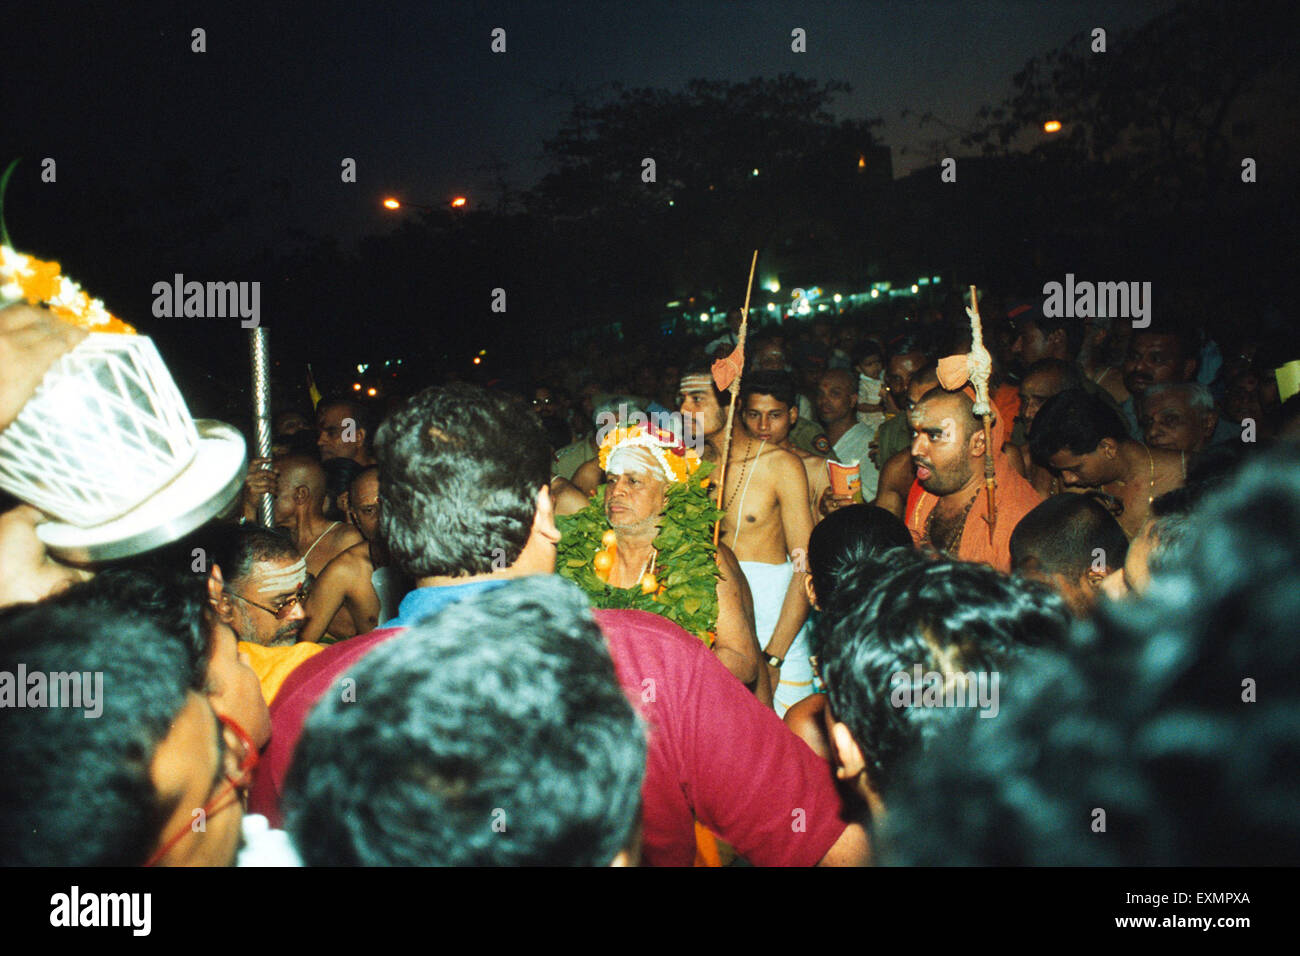 Shankaracharya at Nerul New Mumbai Maharashtra India Stock Photo